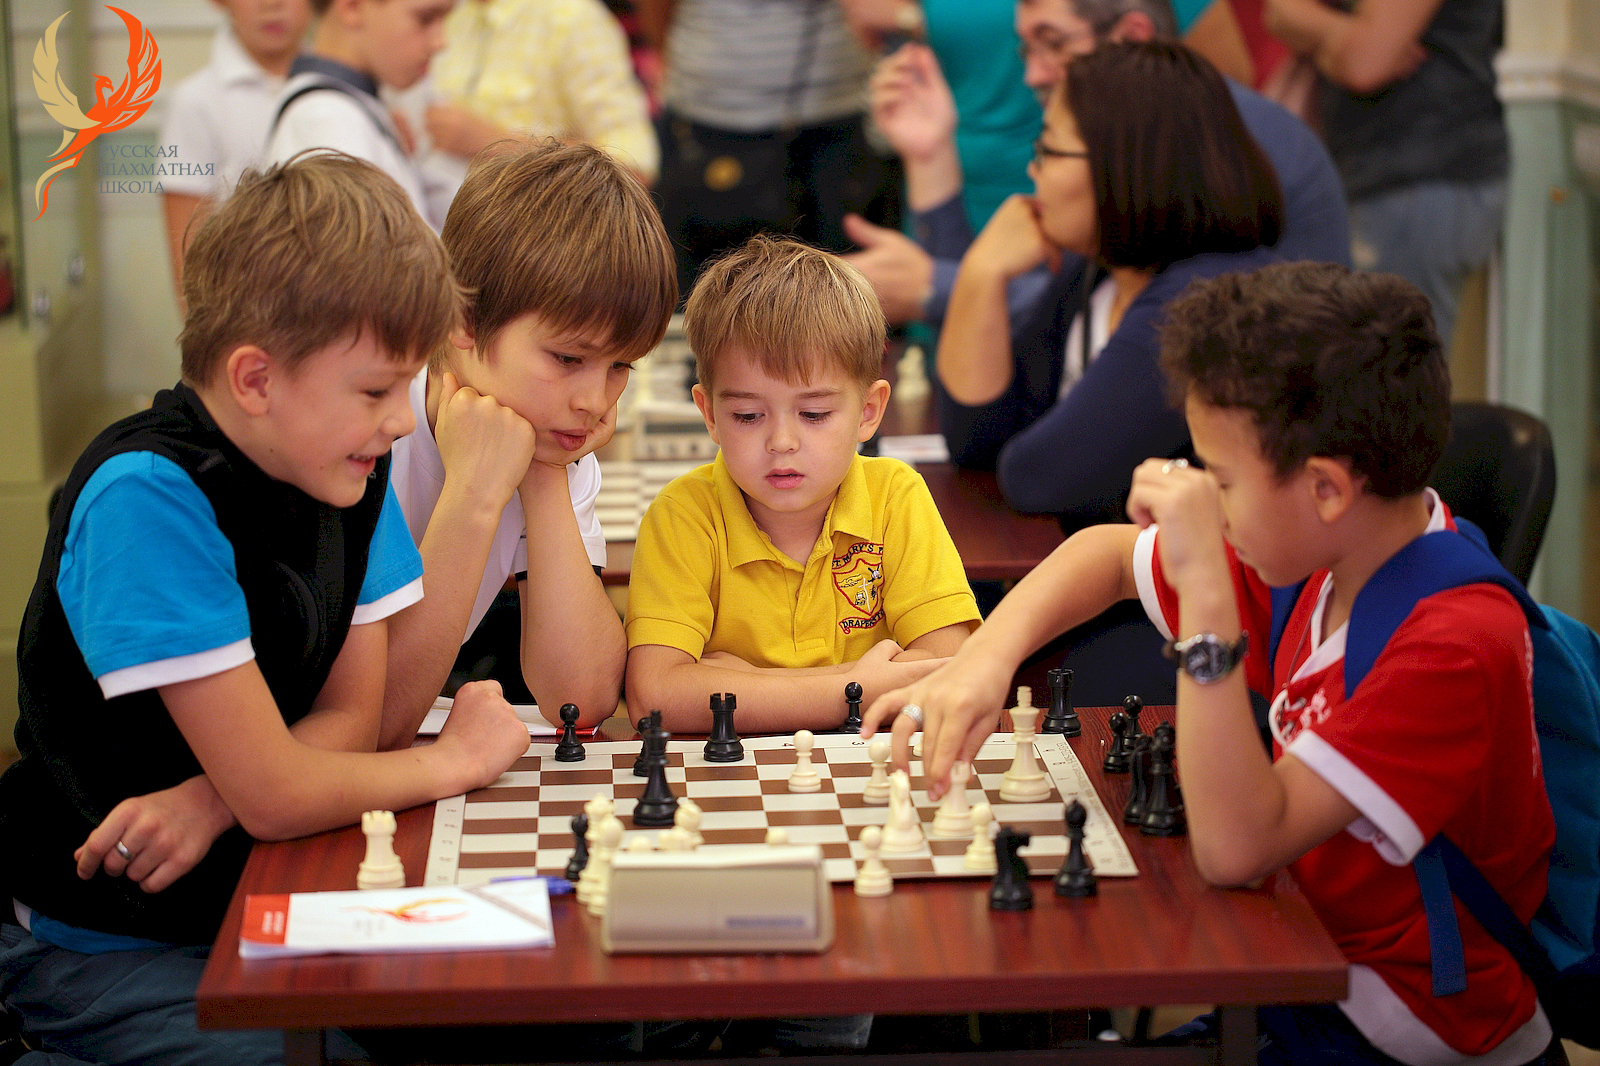 Любимая игра школьников. Шахматы "школьник". Урок шахмат в школе. Младшие школьники секции шахматы. Школьники играют в шахматы.